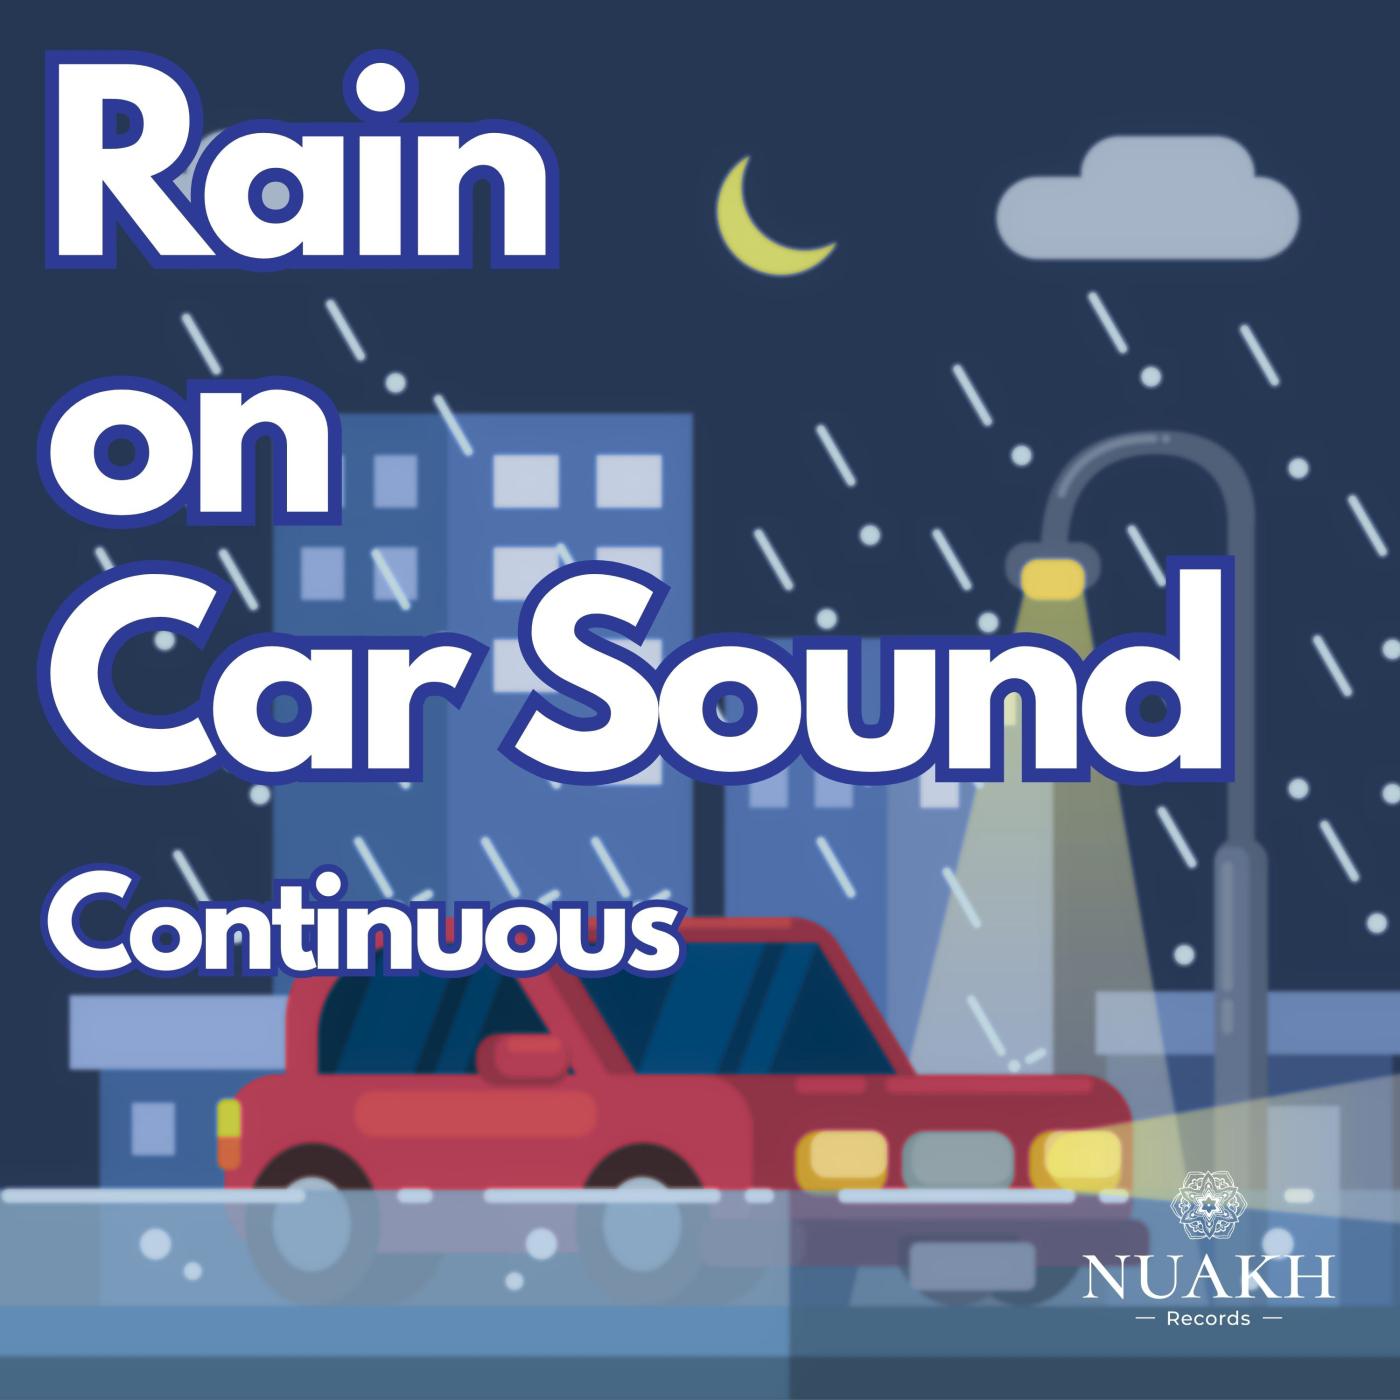 Rain for Sleep - Rain on Car, Pt. 40 (Continuous)